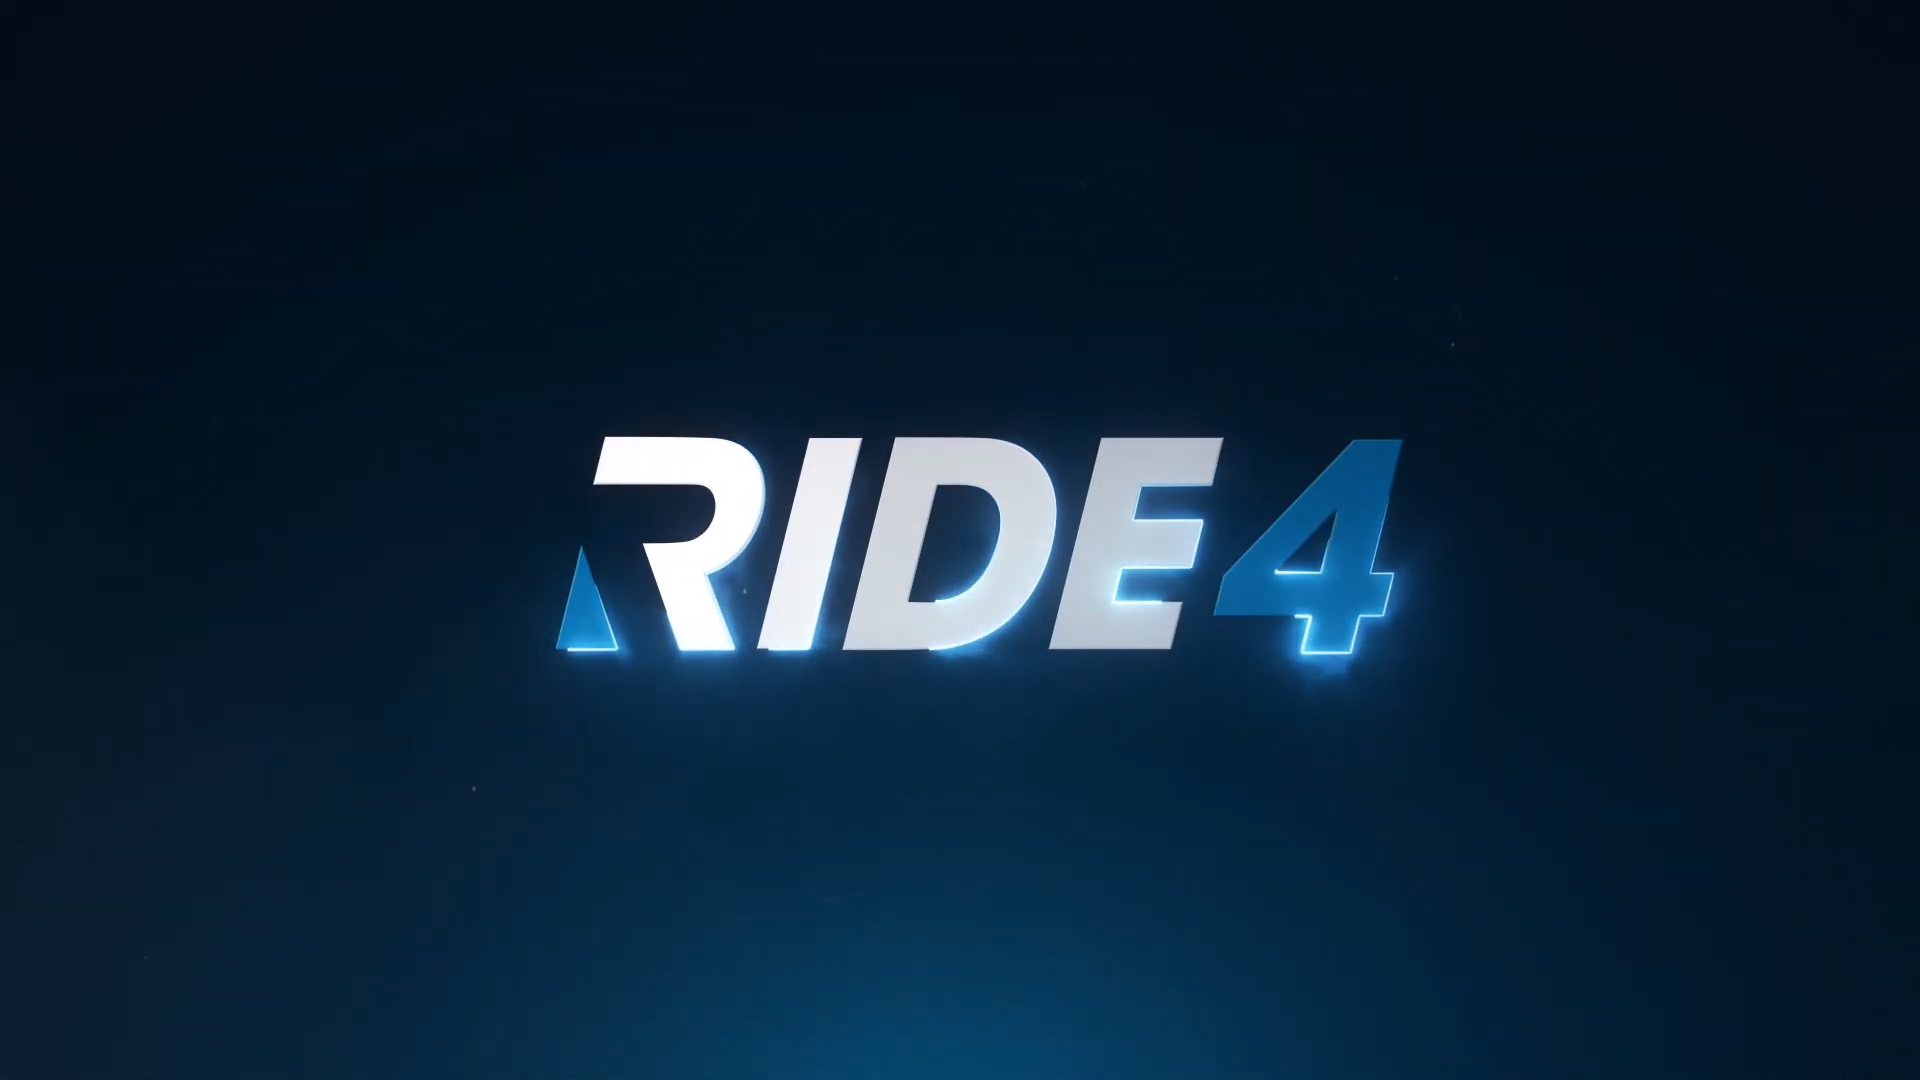 Ride 4 annunciato ufficialmente con un teaser trailer thumbnail